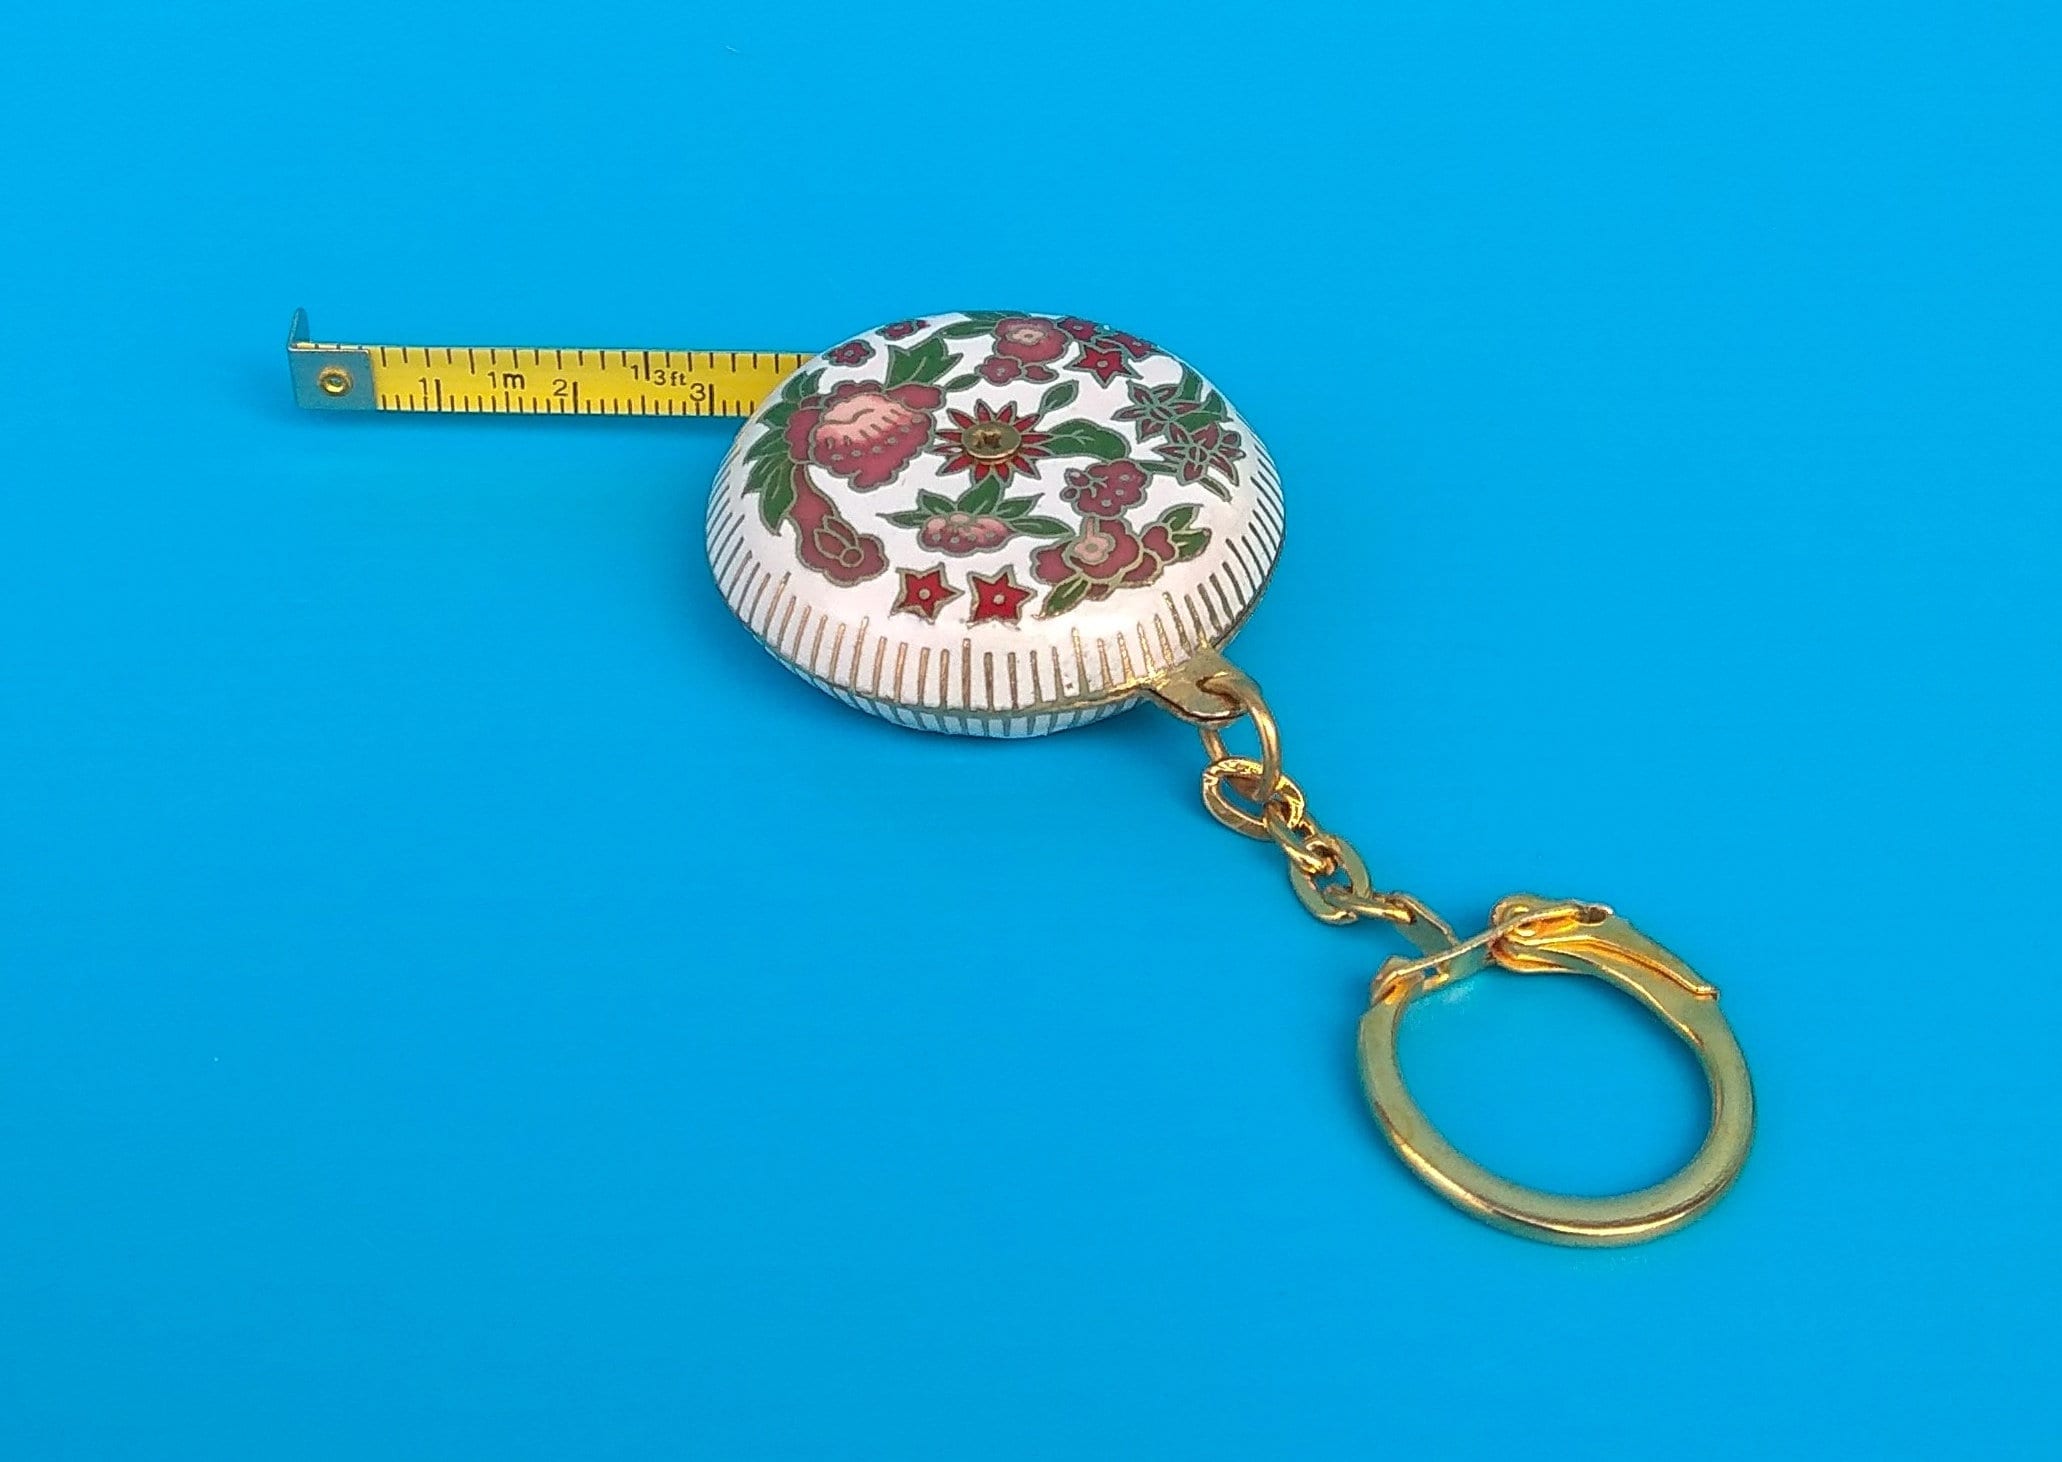 1m Retractable Ruler Tape Measure Key Chain Mini Pocket Size